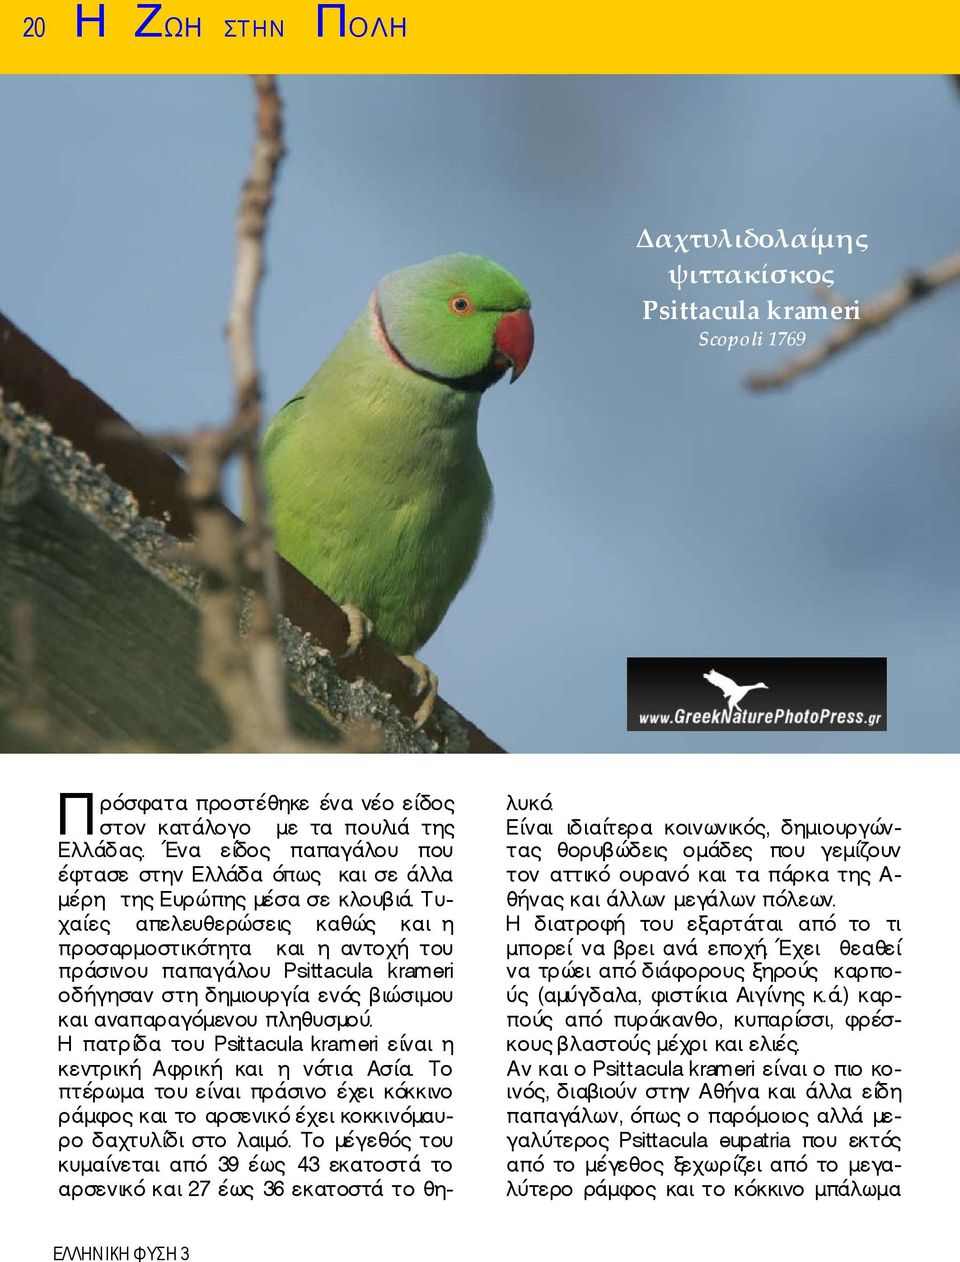 Τυχαίες απελευθερώσεις καθώς και η προσαρμοστικότητα και η αντοχή του πράσινου παπαγάλου Psittacula krameri οδήγησαν στη δημιουργία ενός βιώσιμου και αναπαραγόμενου πληθυσμού.